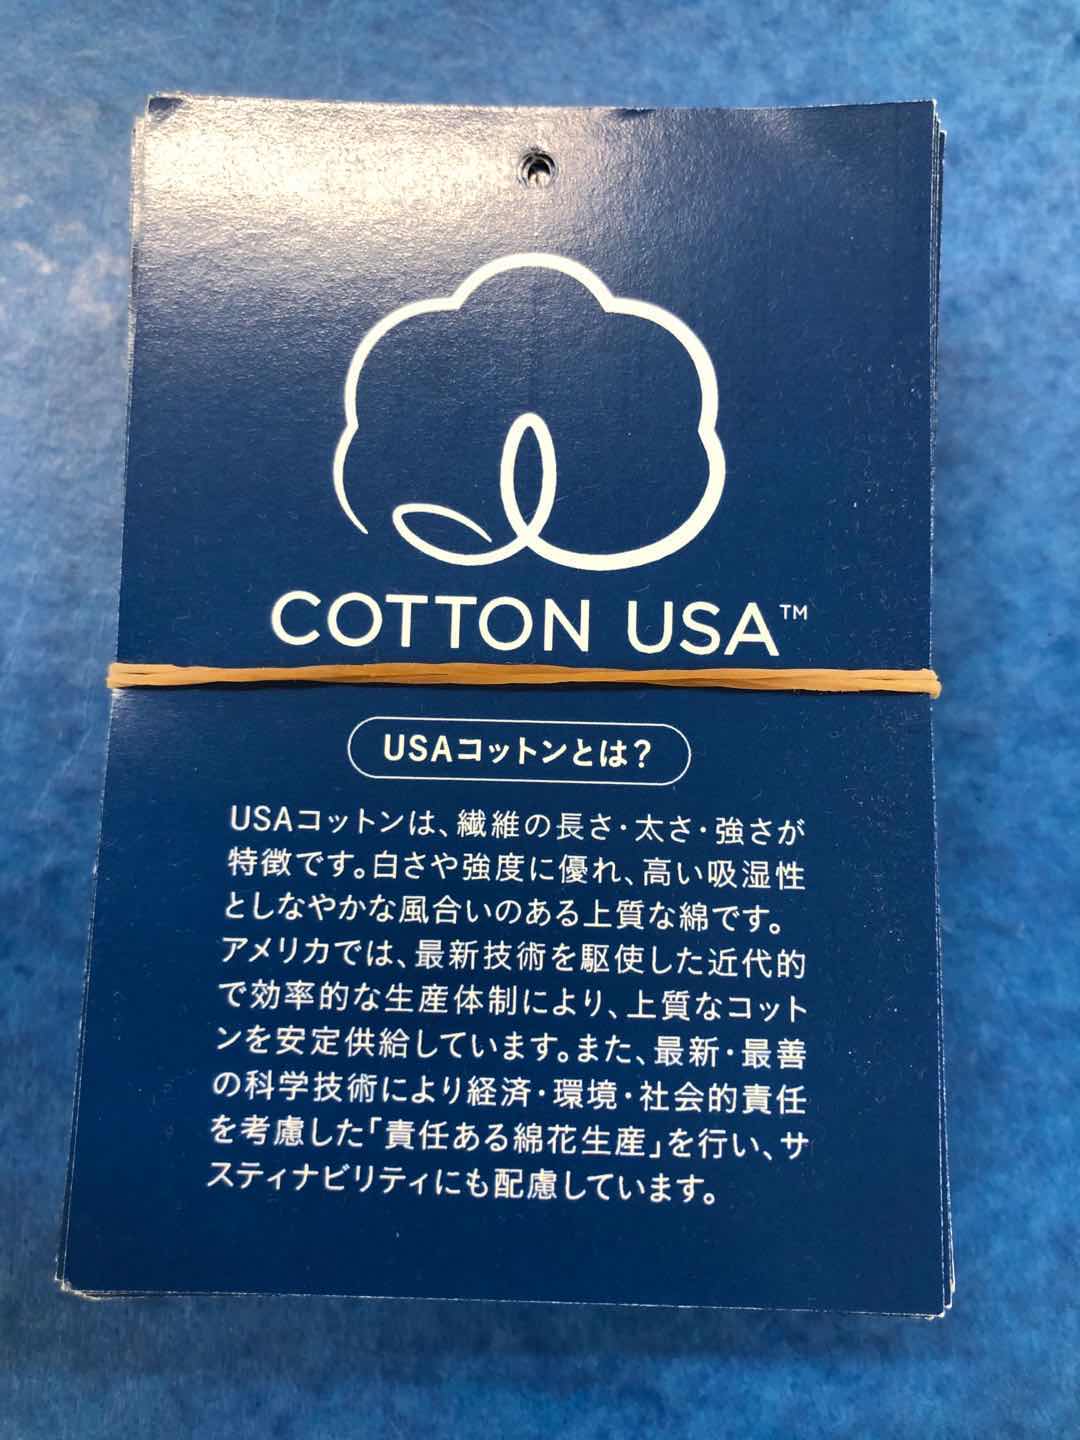 美棉纱线多少钱  美棉纱线厂家报价  美棉纱线哪里便宜